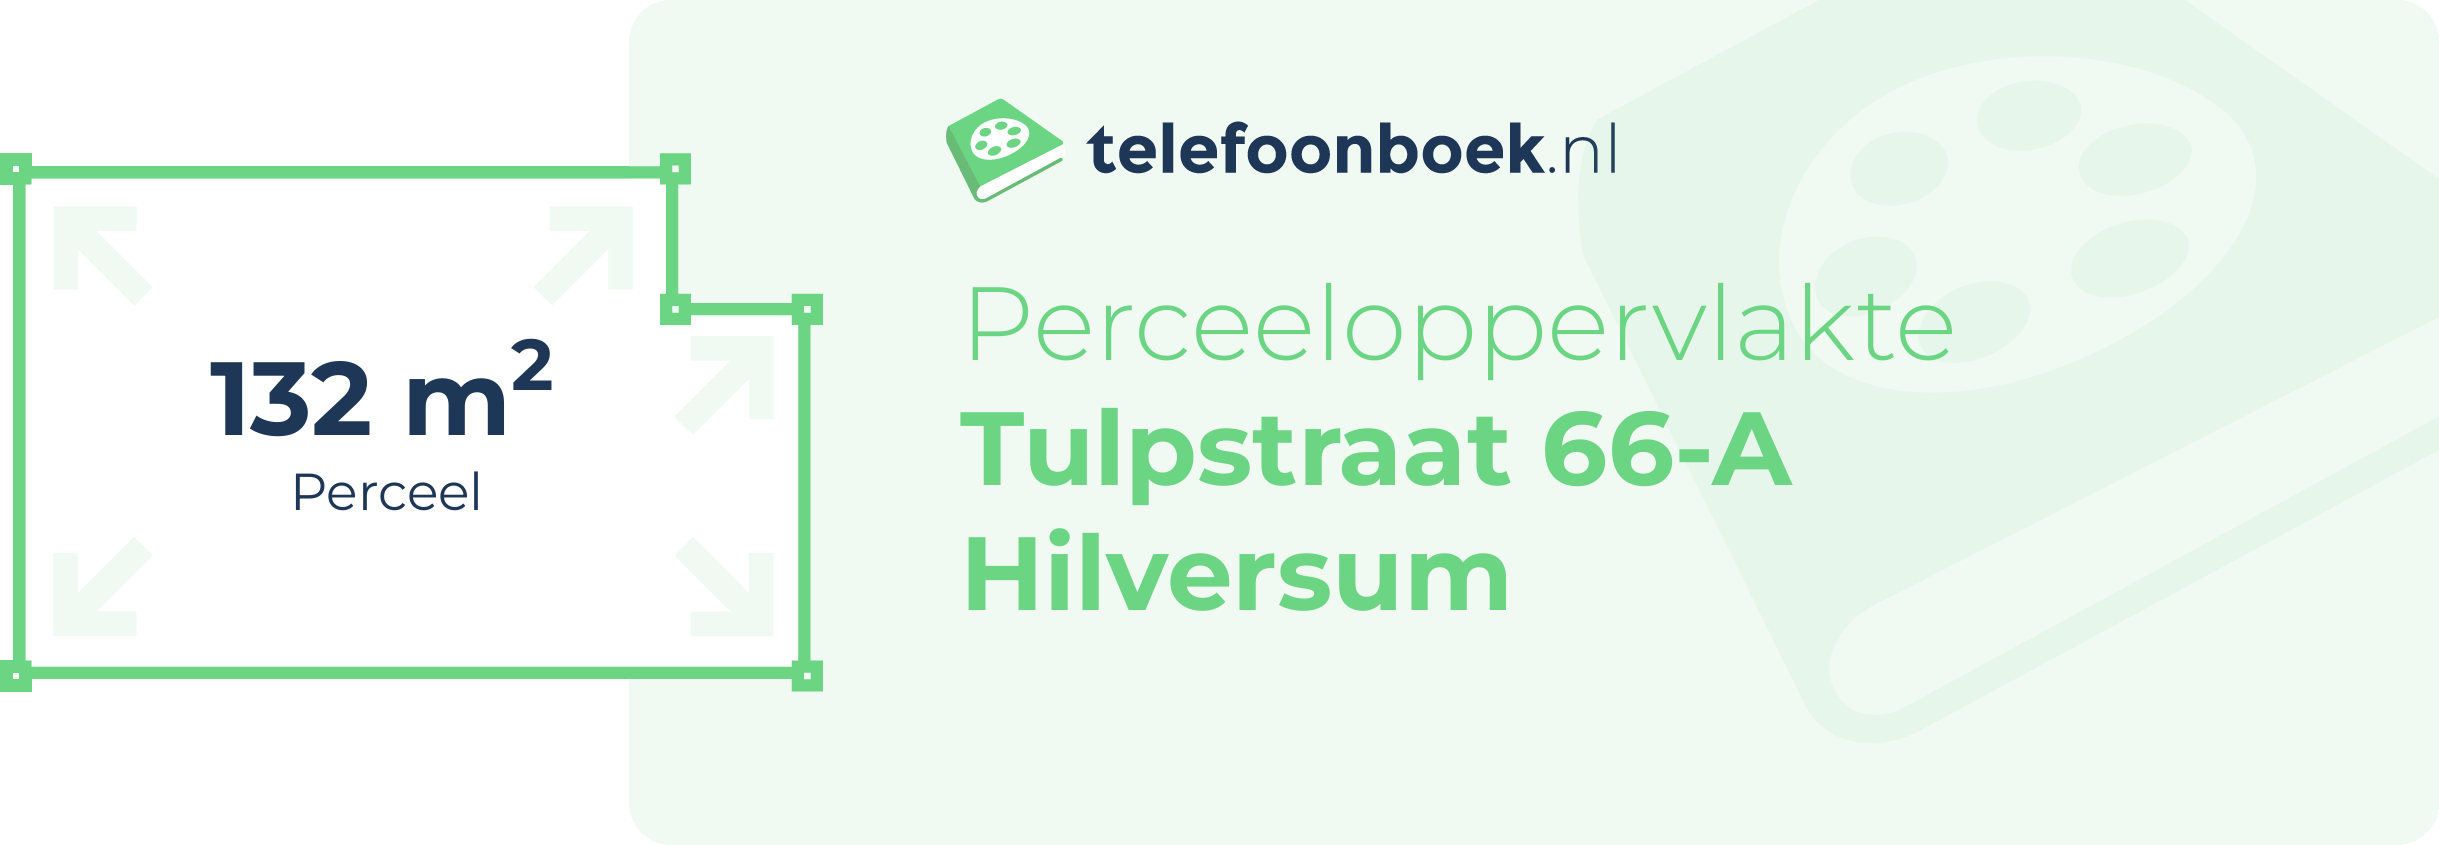 Perceeloppervlakte Tulpstraat 66-A Hilversum